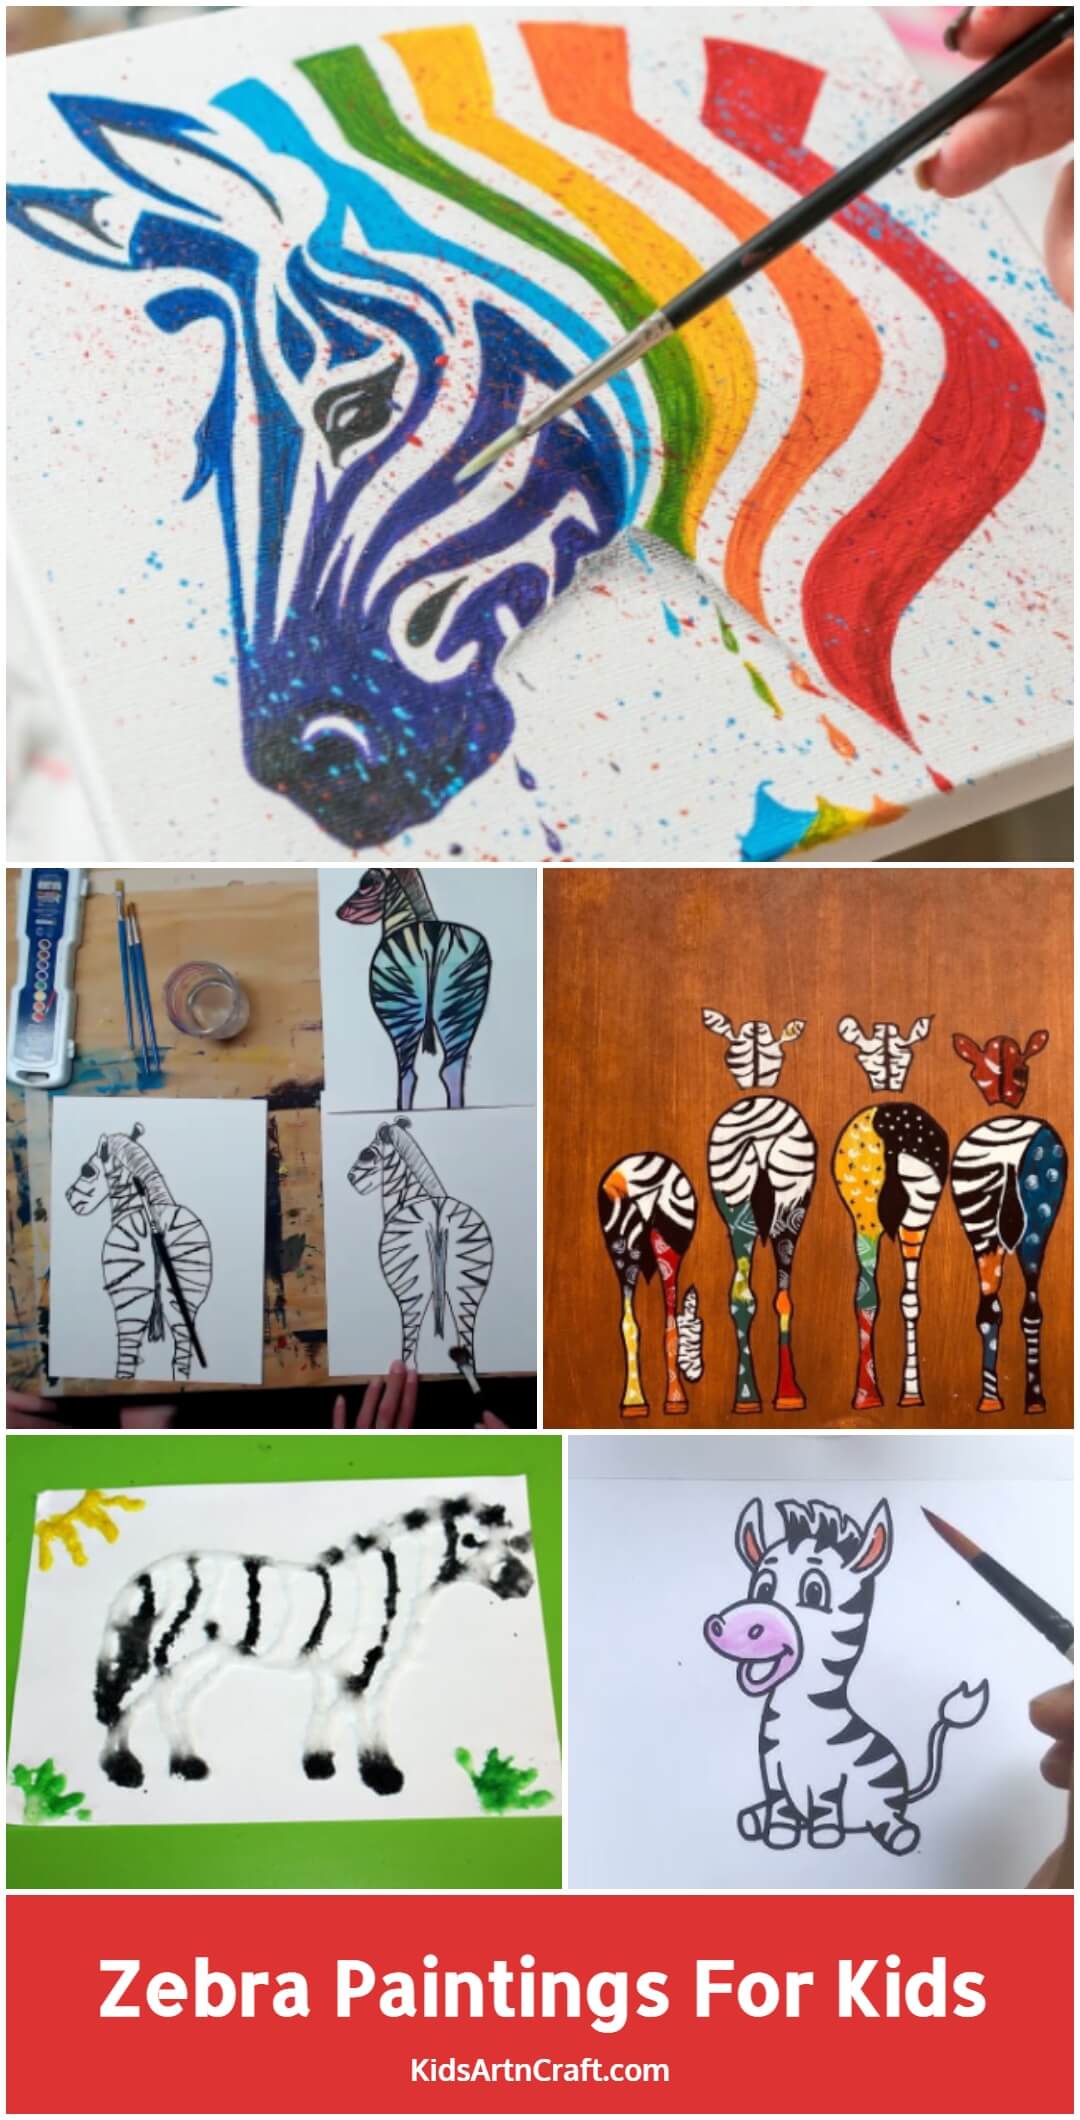 Zebra Paintings For Kids